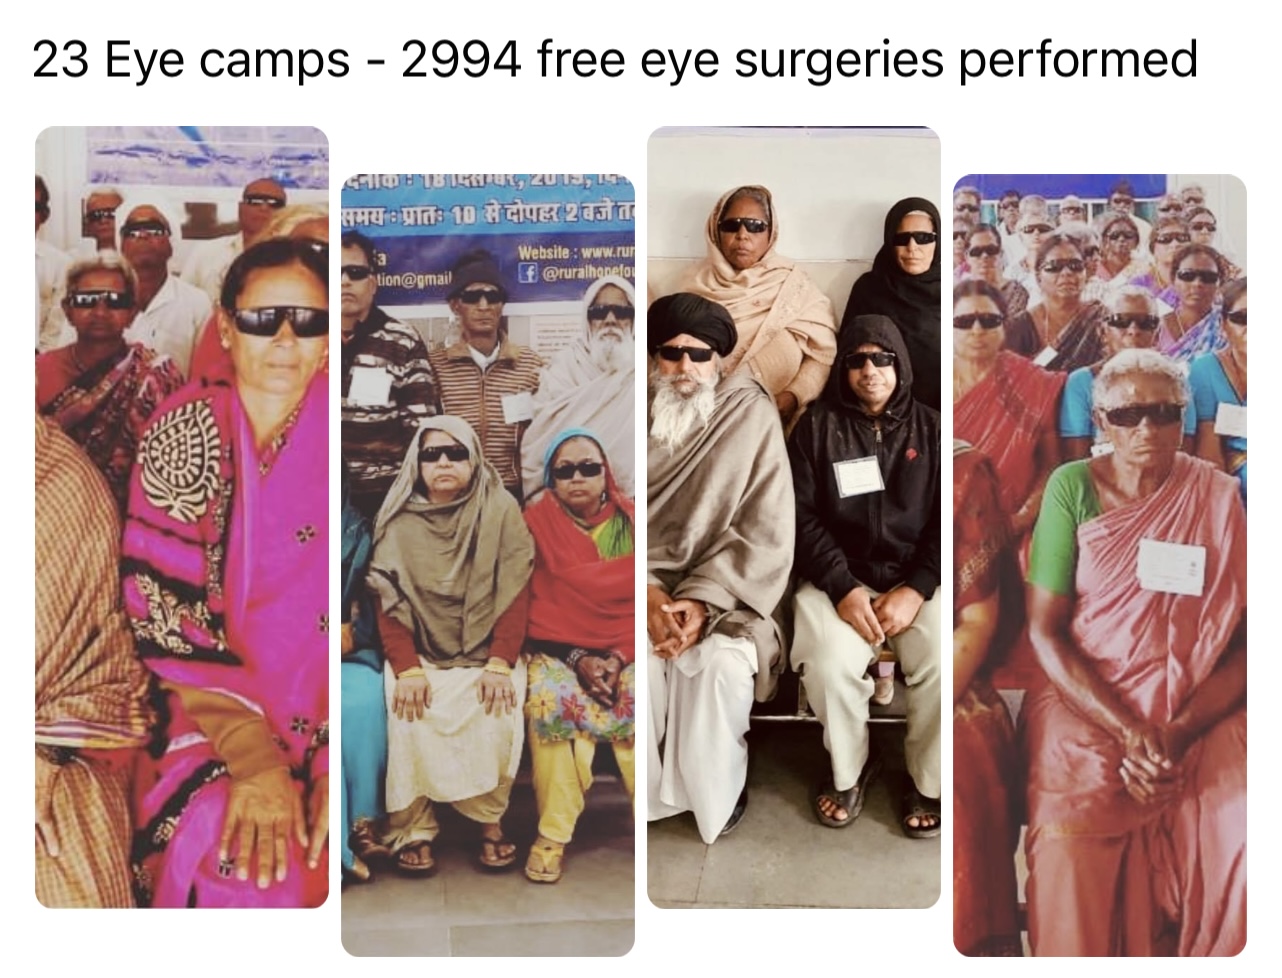 Free Eye Surgeries